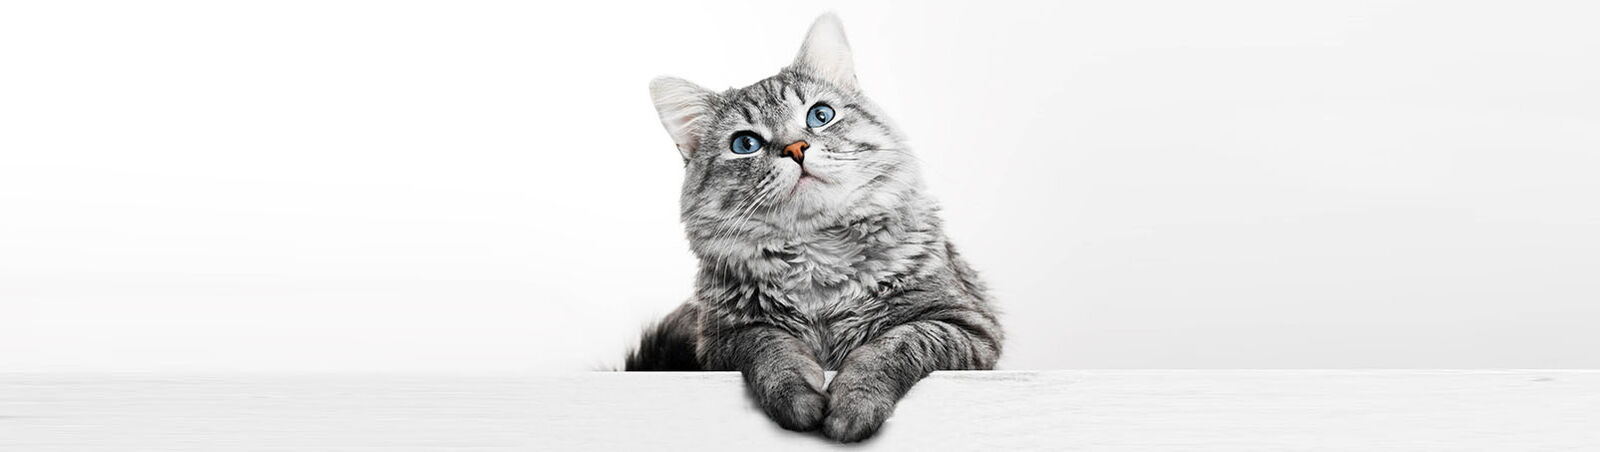 Eine graue Katze ist vor einem weißen Hintergrund abgebildet.